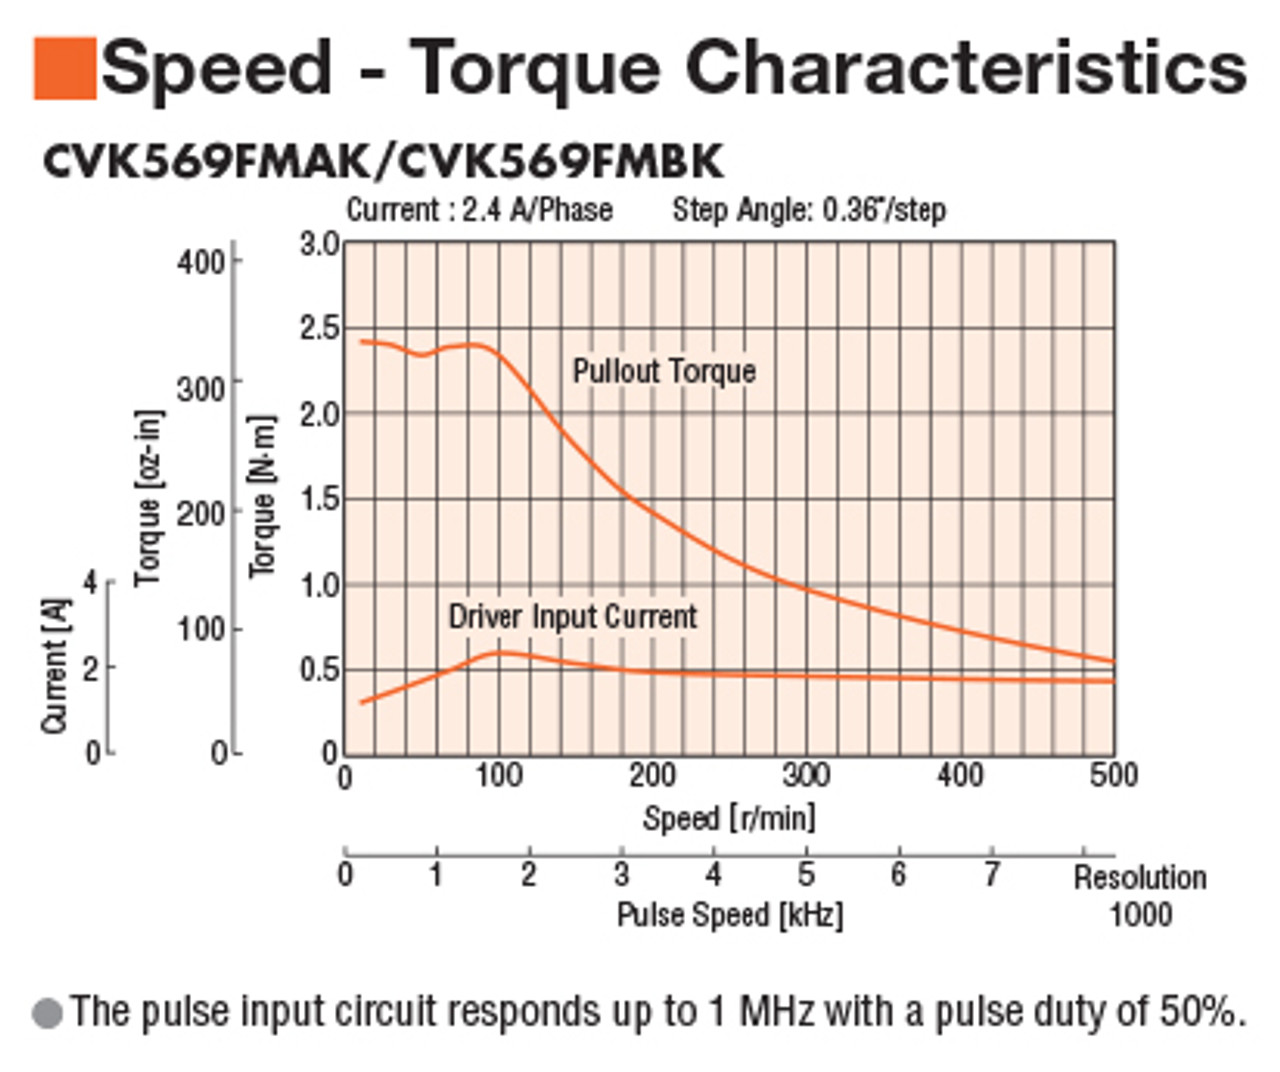 PKP569FMN24A - Speed-Torque